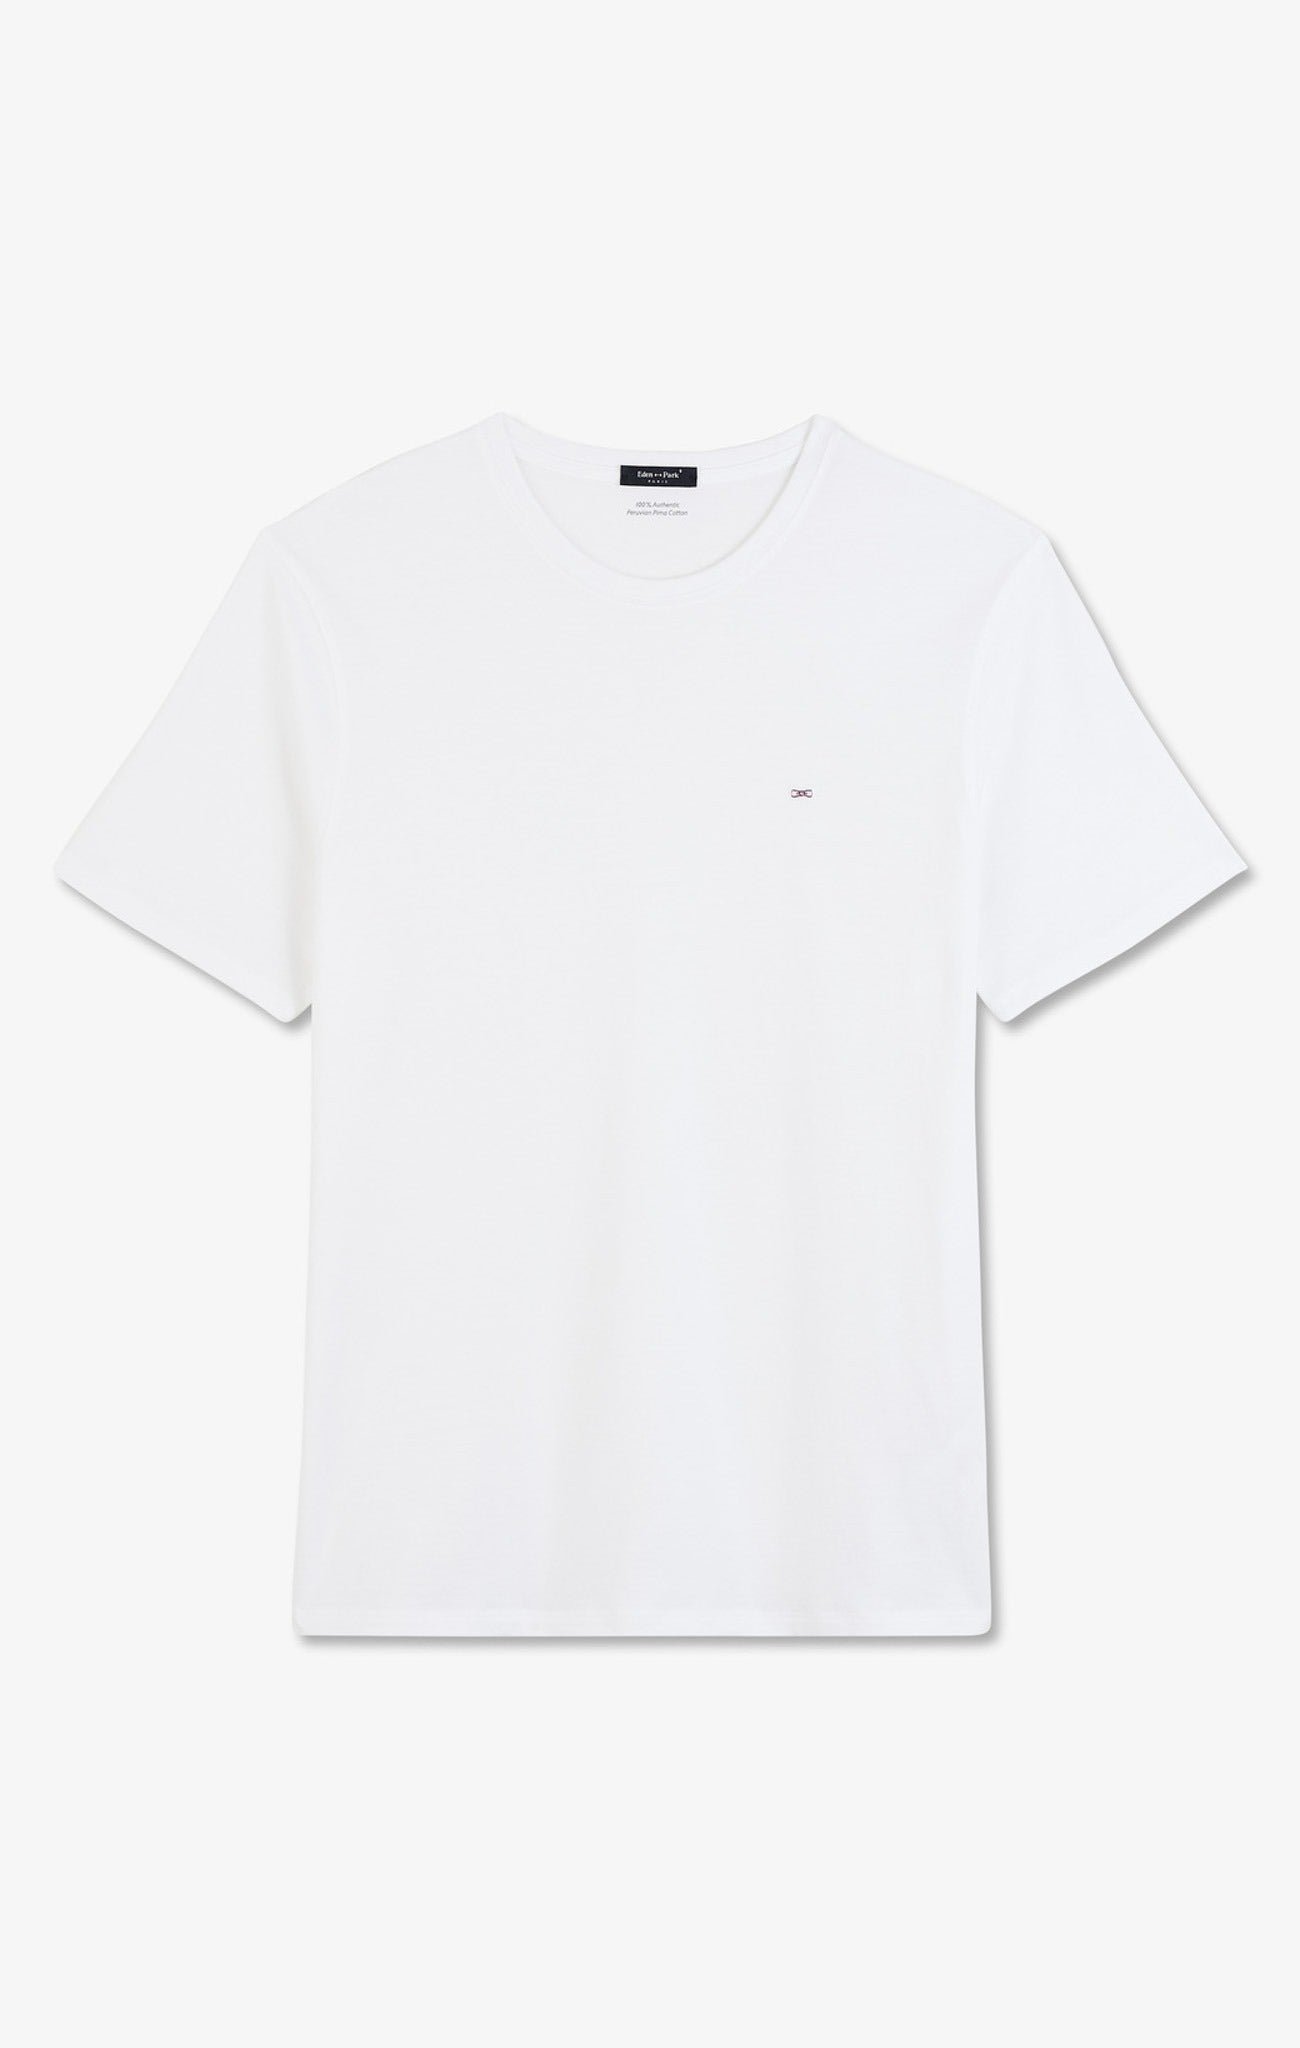 T-shirt blanc col rond à manches courtes - Image 2